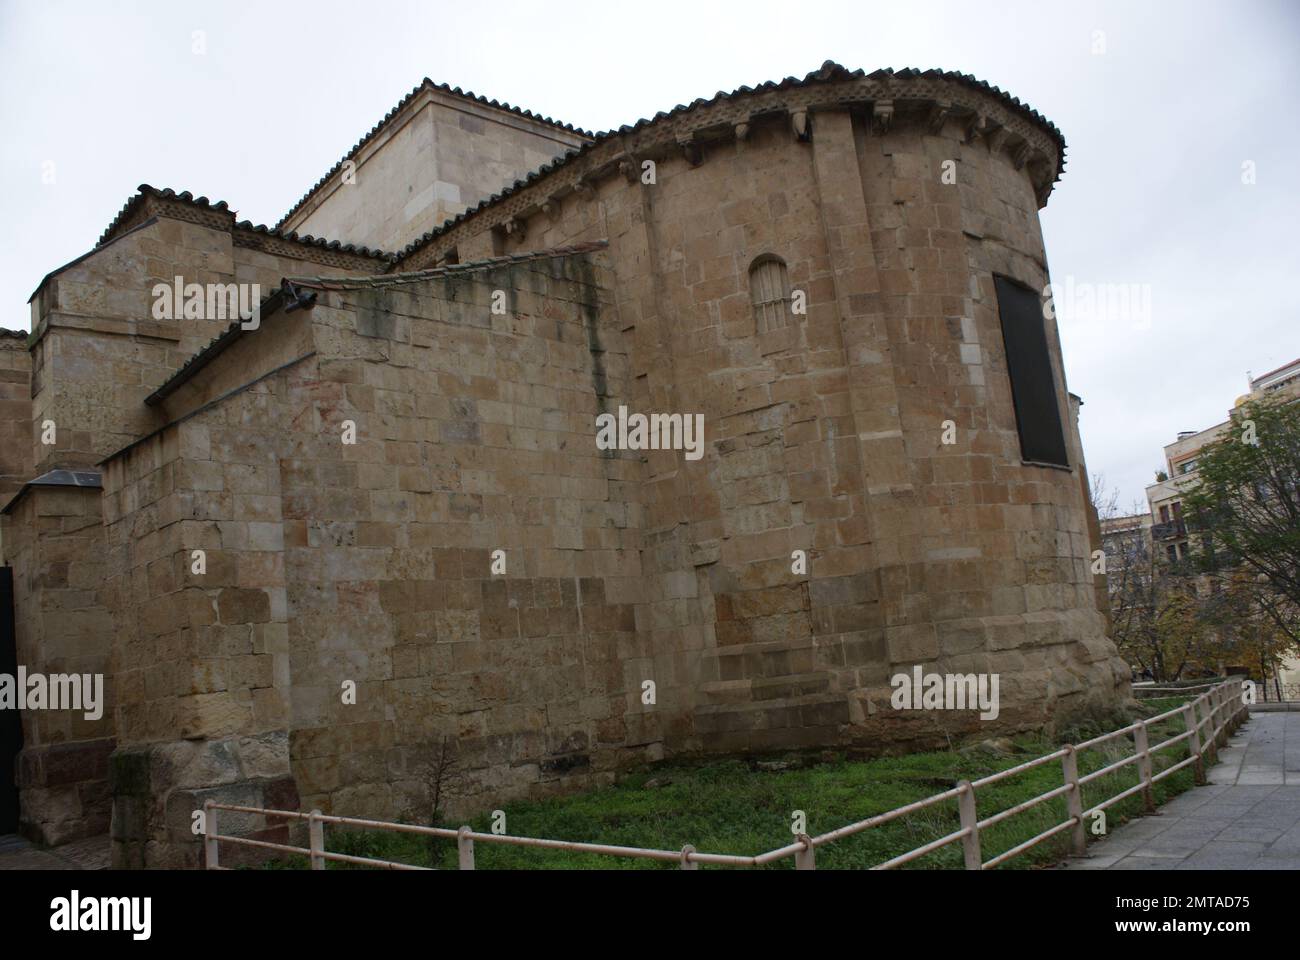 La iglesia de San Cristóbal es un templo románico de la ciudad española de Salamanca. Stock Photo